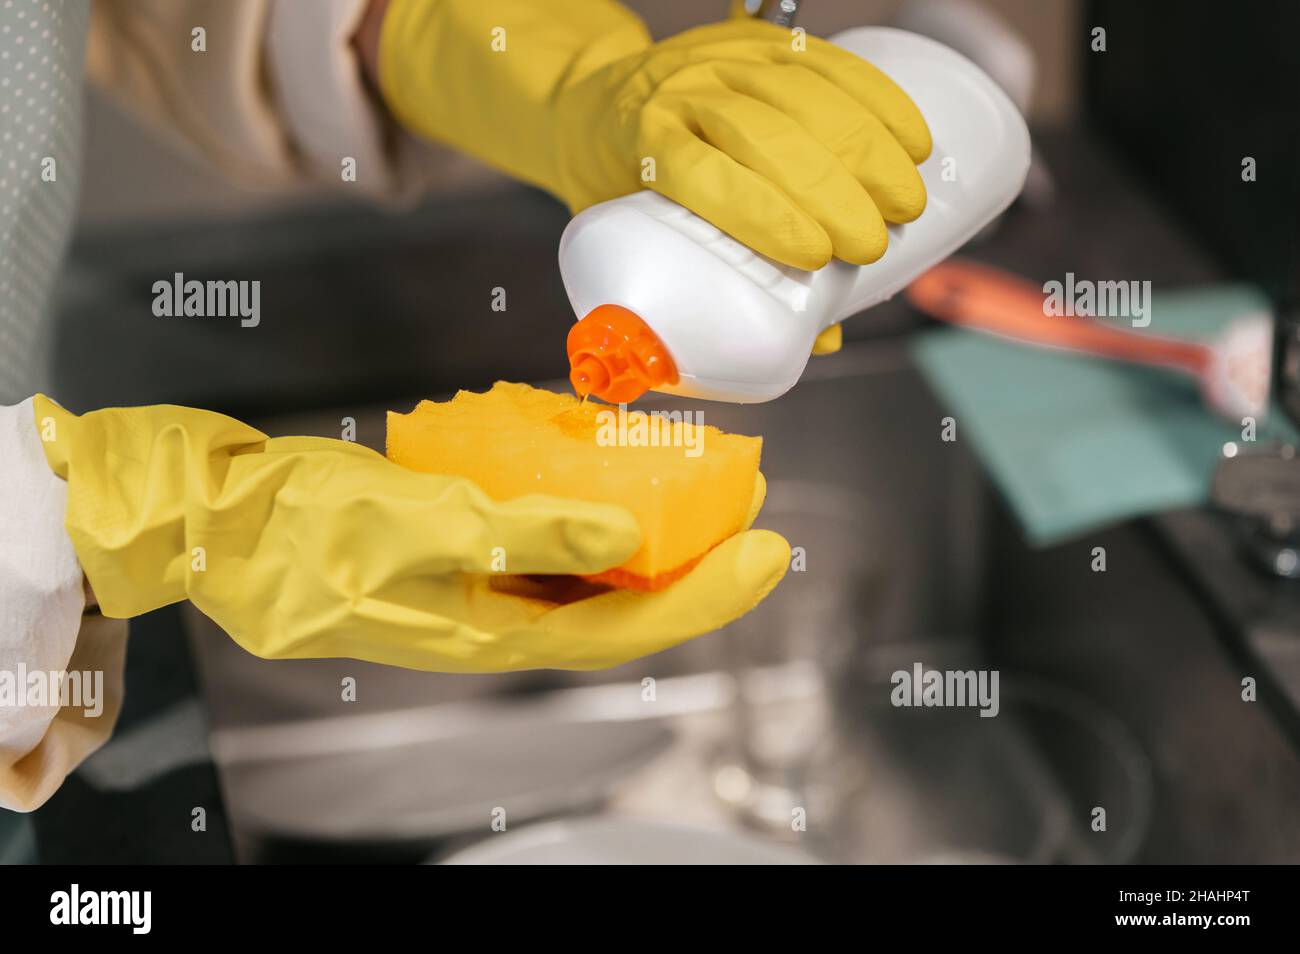 Gros plan des mains dans des gants jaunes versant du détergent sur une éponge Banque D'Images